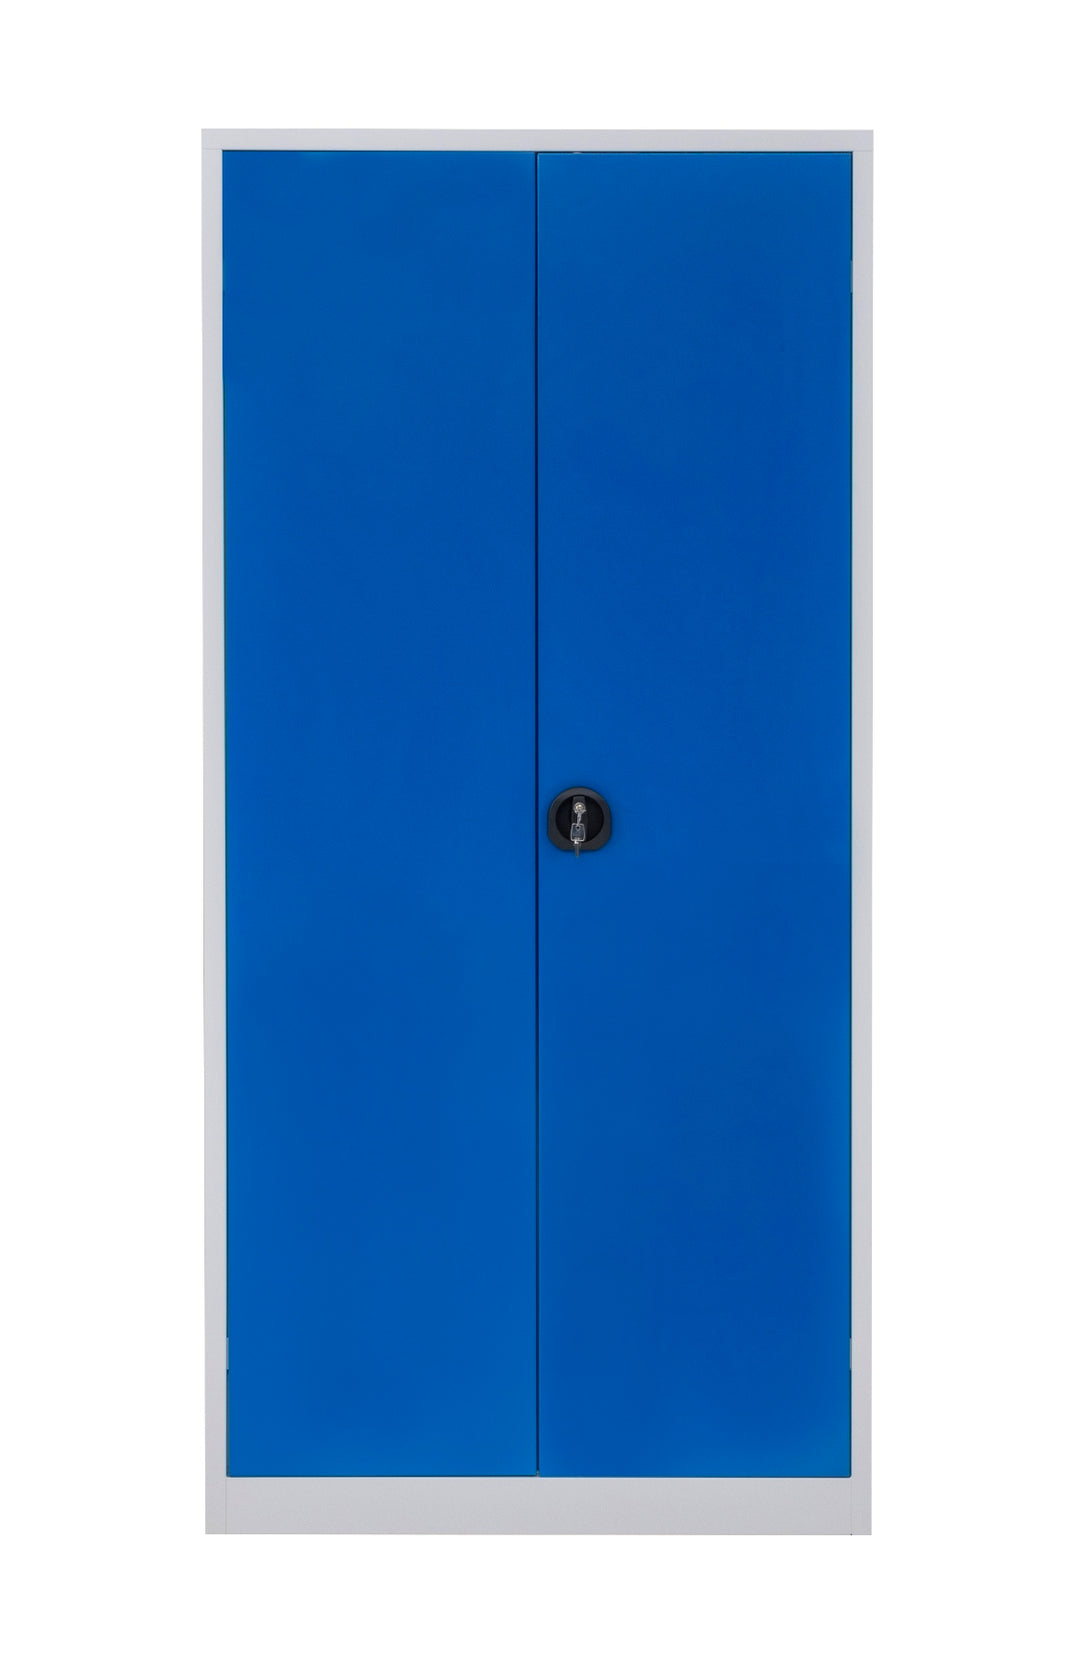 Furni24 Aktenschrank,mit 5 Fächern,fertig montiert,195x92x42cm,Stahlflügeltürschrank,Abschließbarer Spind,blau